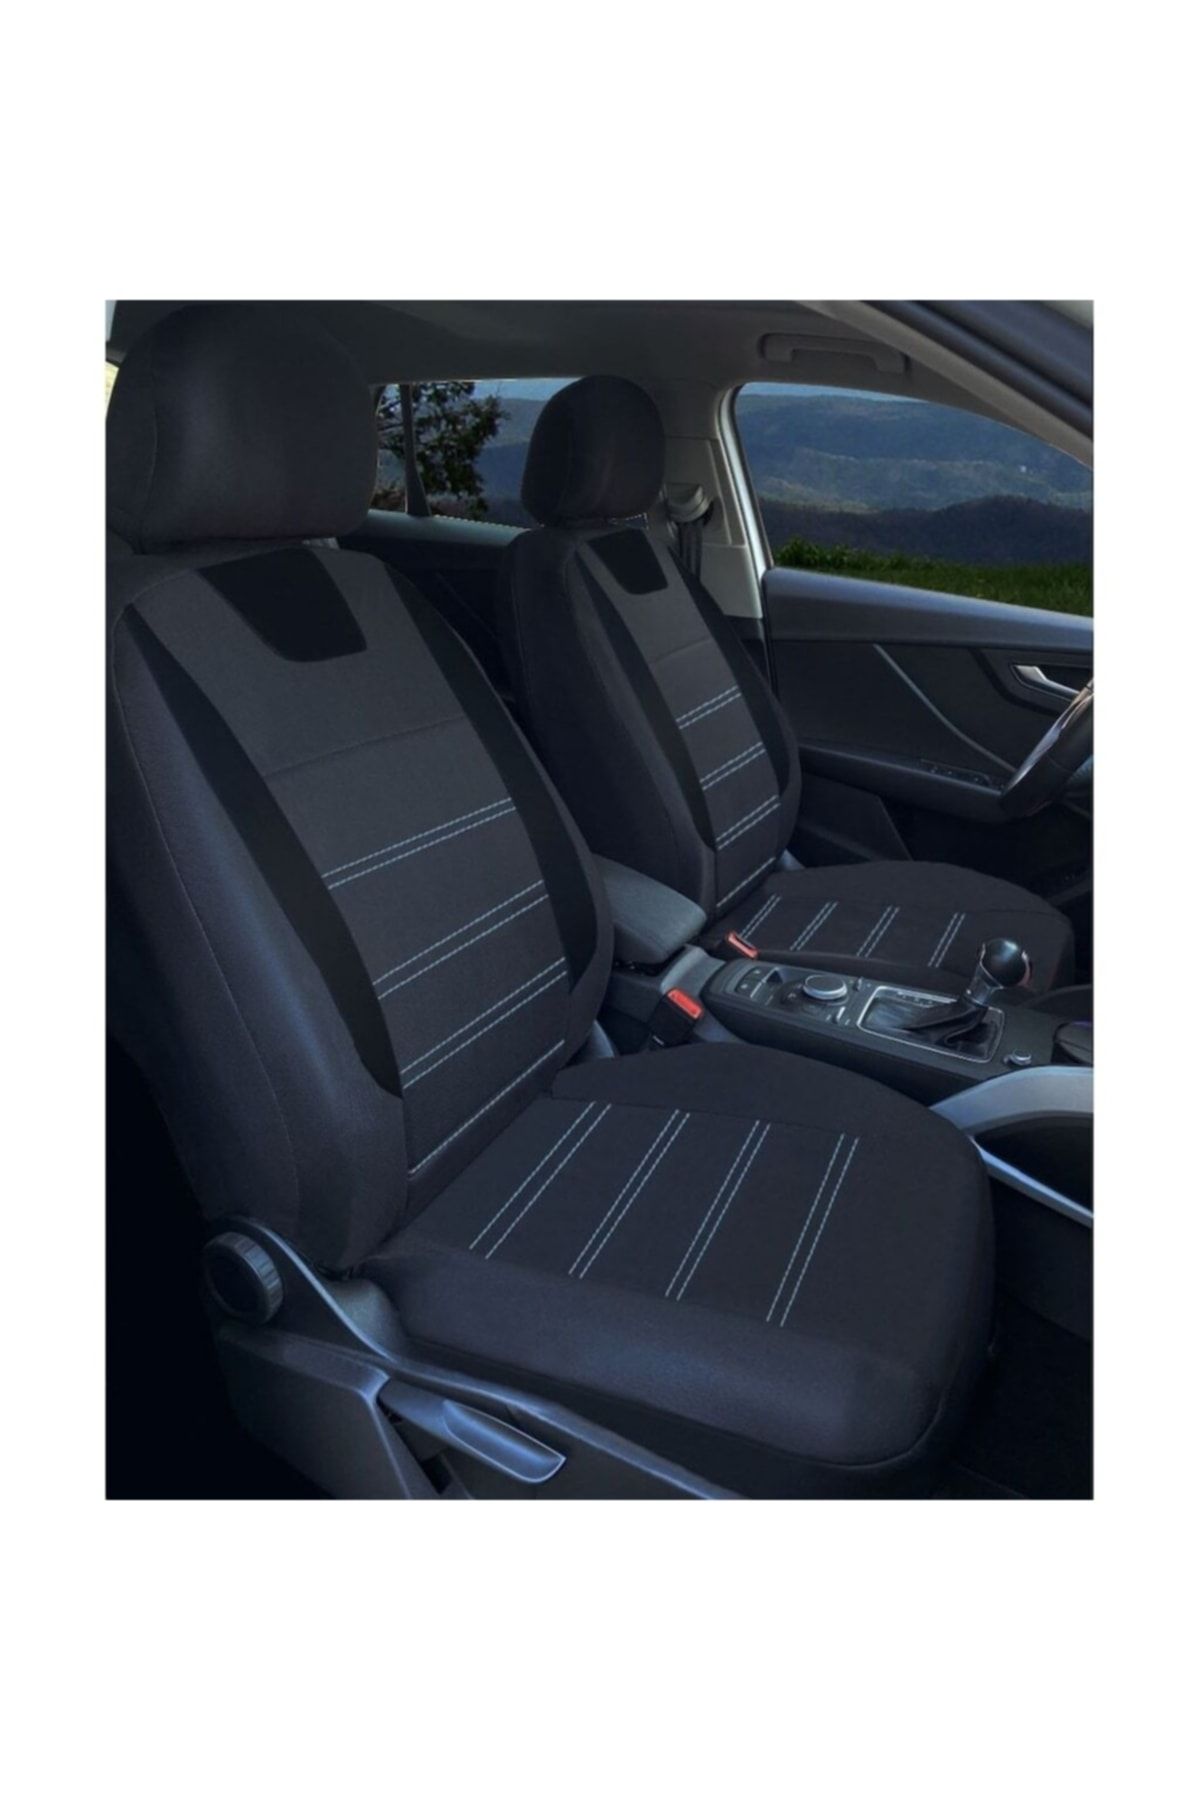 Max Store Honda Civic Fd6 Uyumlu Oto Koltuk Kılıfı Seti Maxy Sb Fiyatı